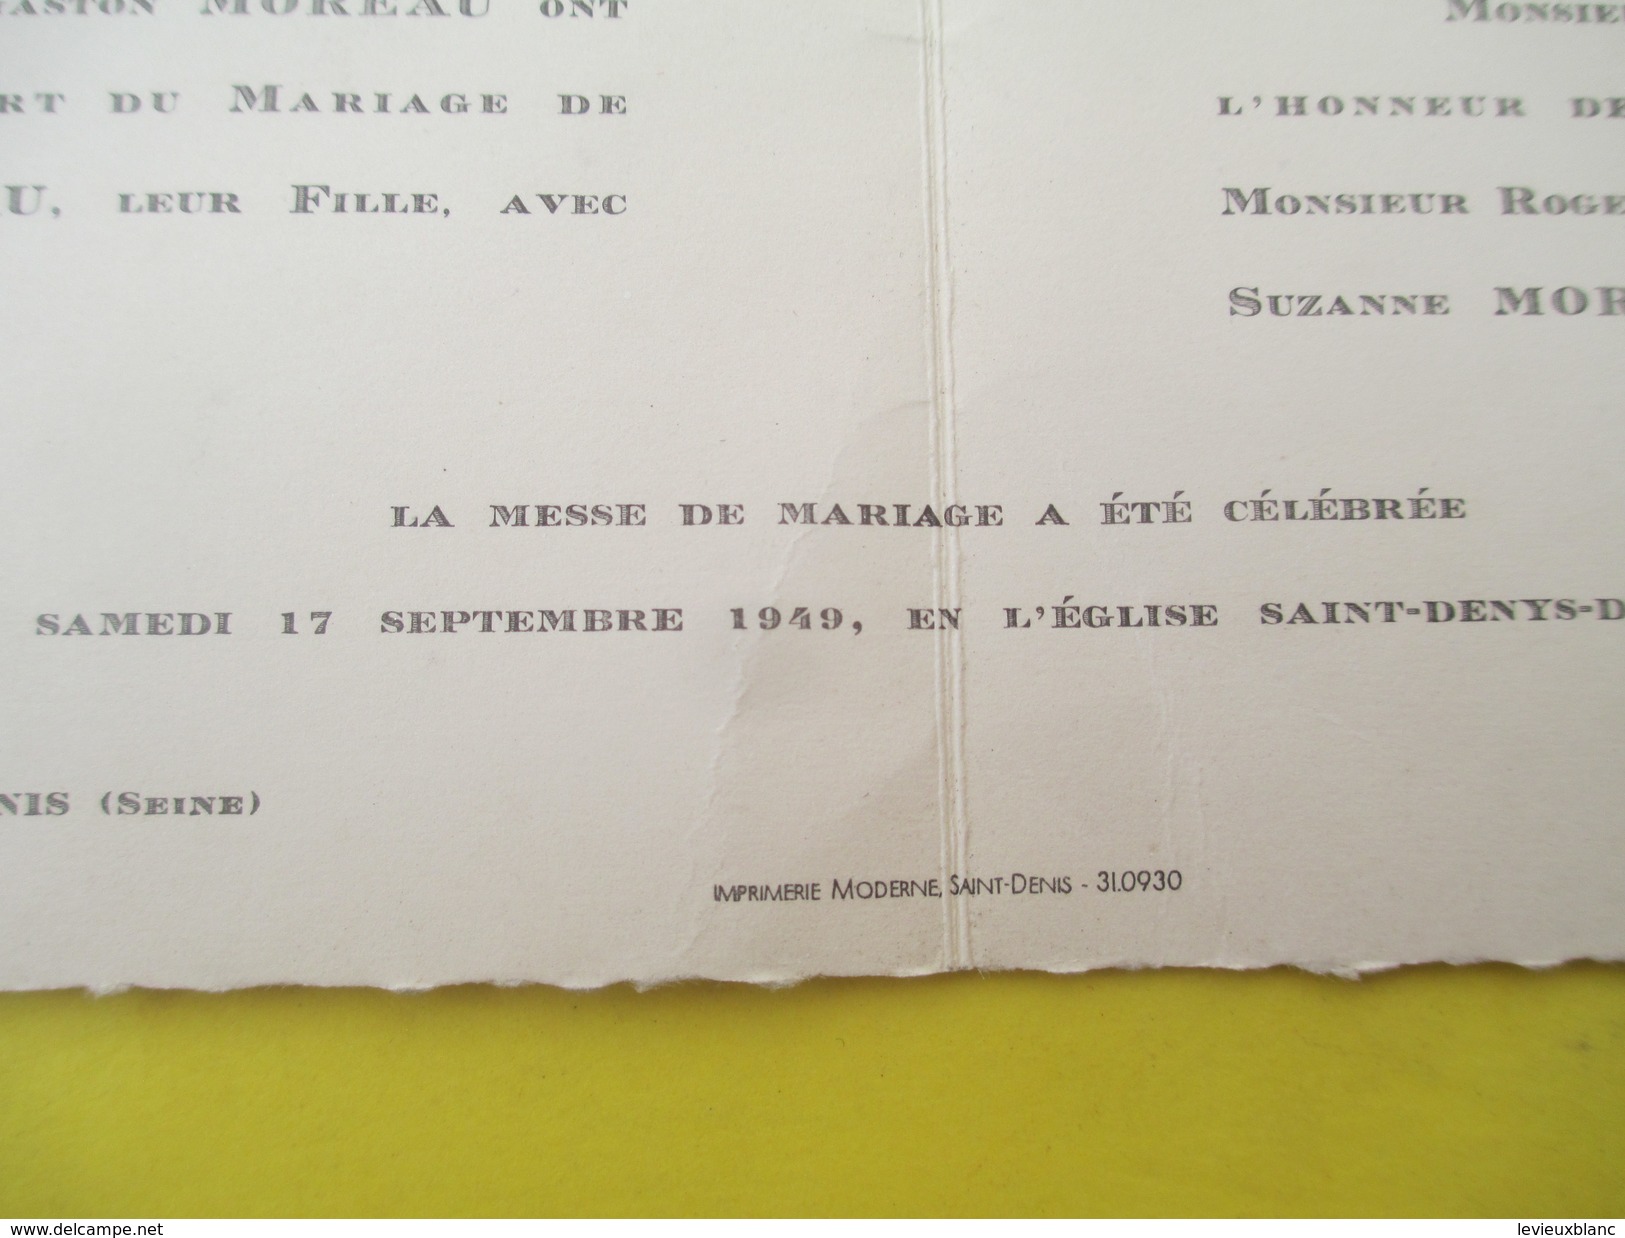 Faire-part De Mariage/Suzanne Moreau - Roger Gebel/Eglise Saint Denys De L'Estrée/Saint Denis/Seine/Pantin/1949    FPM37 - Wedding